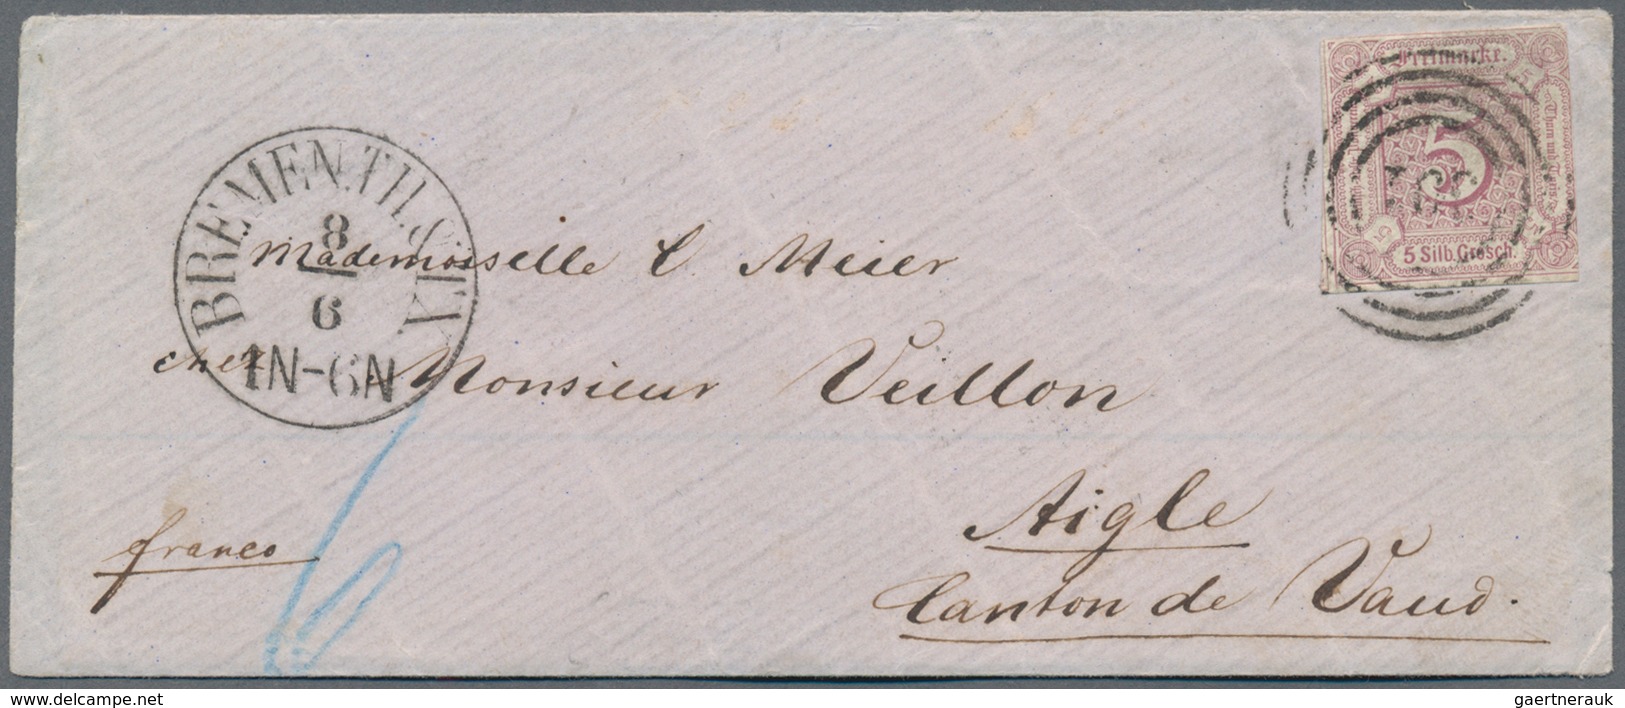 Thurn & Taxis - Marken und Briefe: 1852 - 1864 (ca.), Sammlung von 50 sauberen Belegen in Einzel-, M